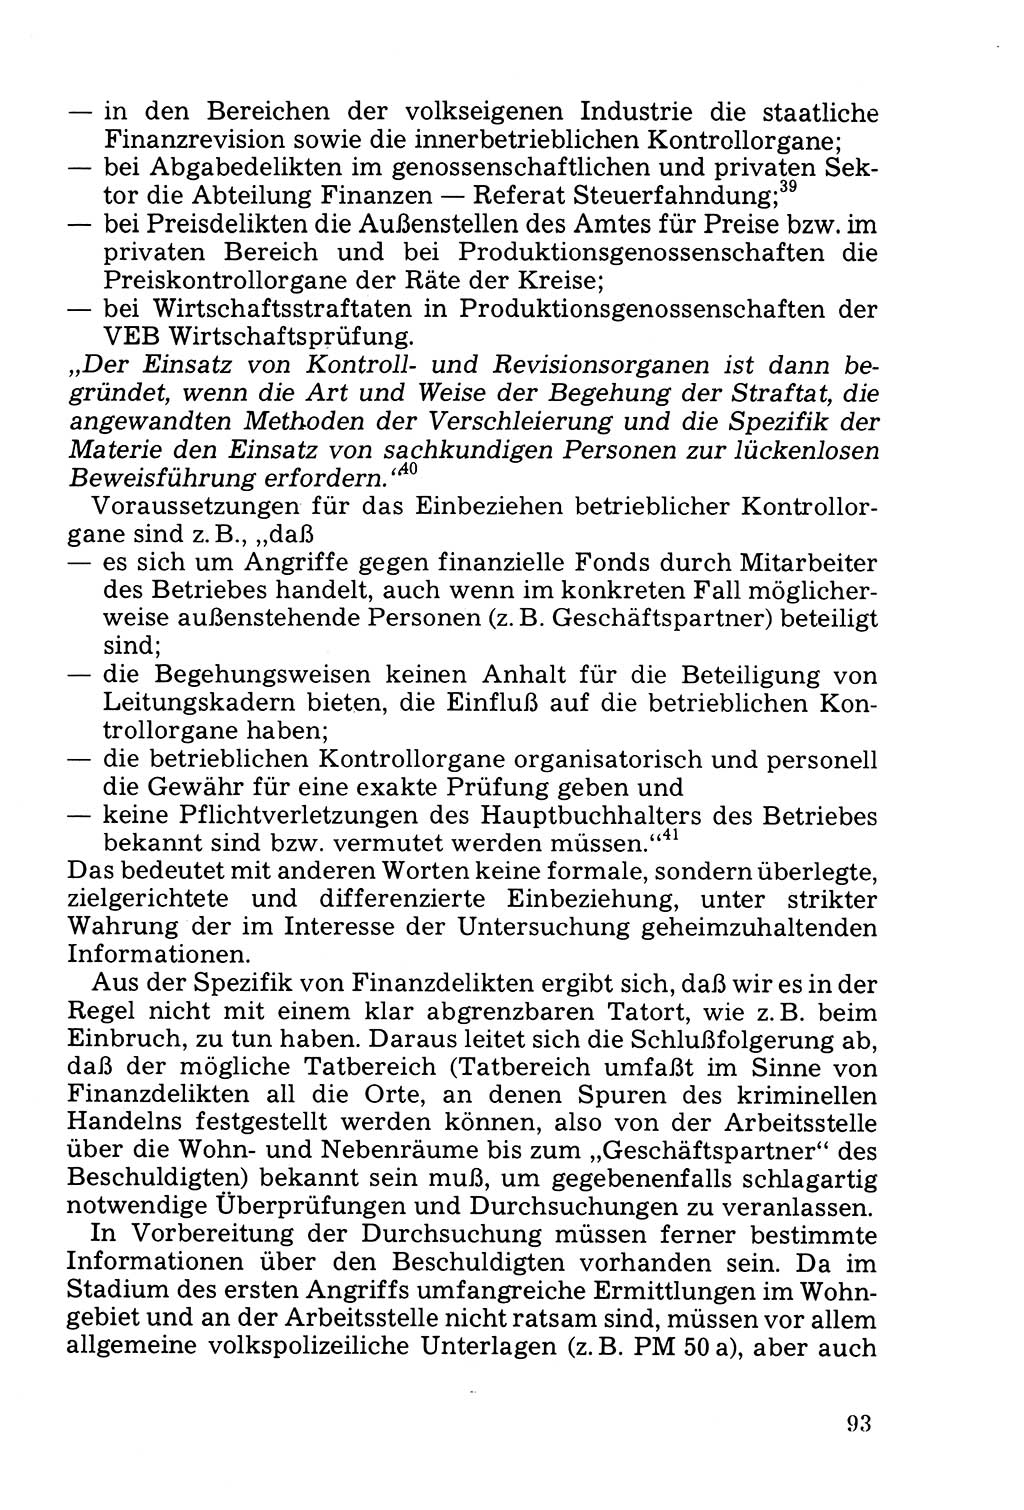 Die Durchsuchung und die Beschlagnahme [Deutsche Demokratische Republik (DDR)] 1979, Seite 93 (Durchs. Beschl. DDR 1979, S. 93)